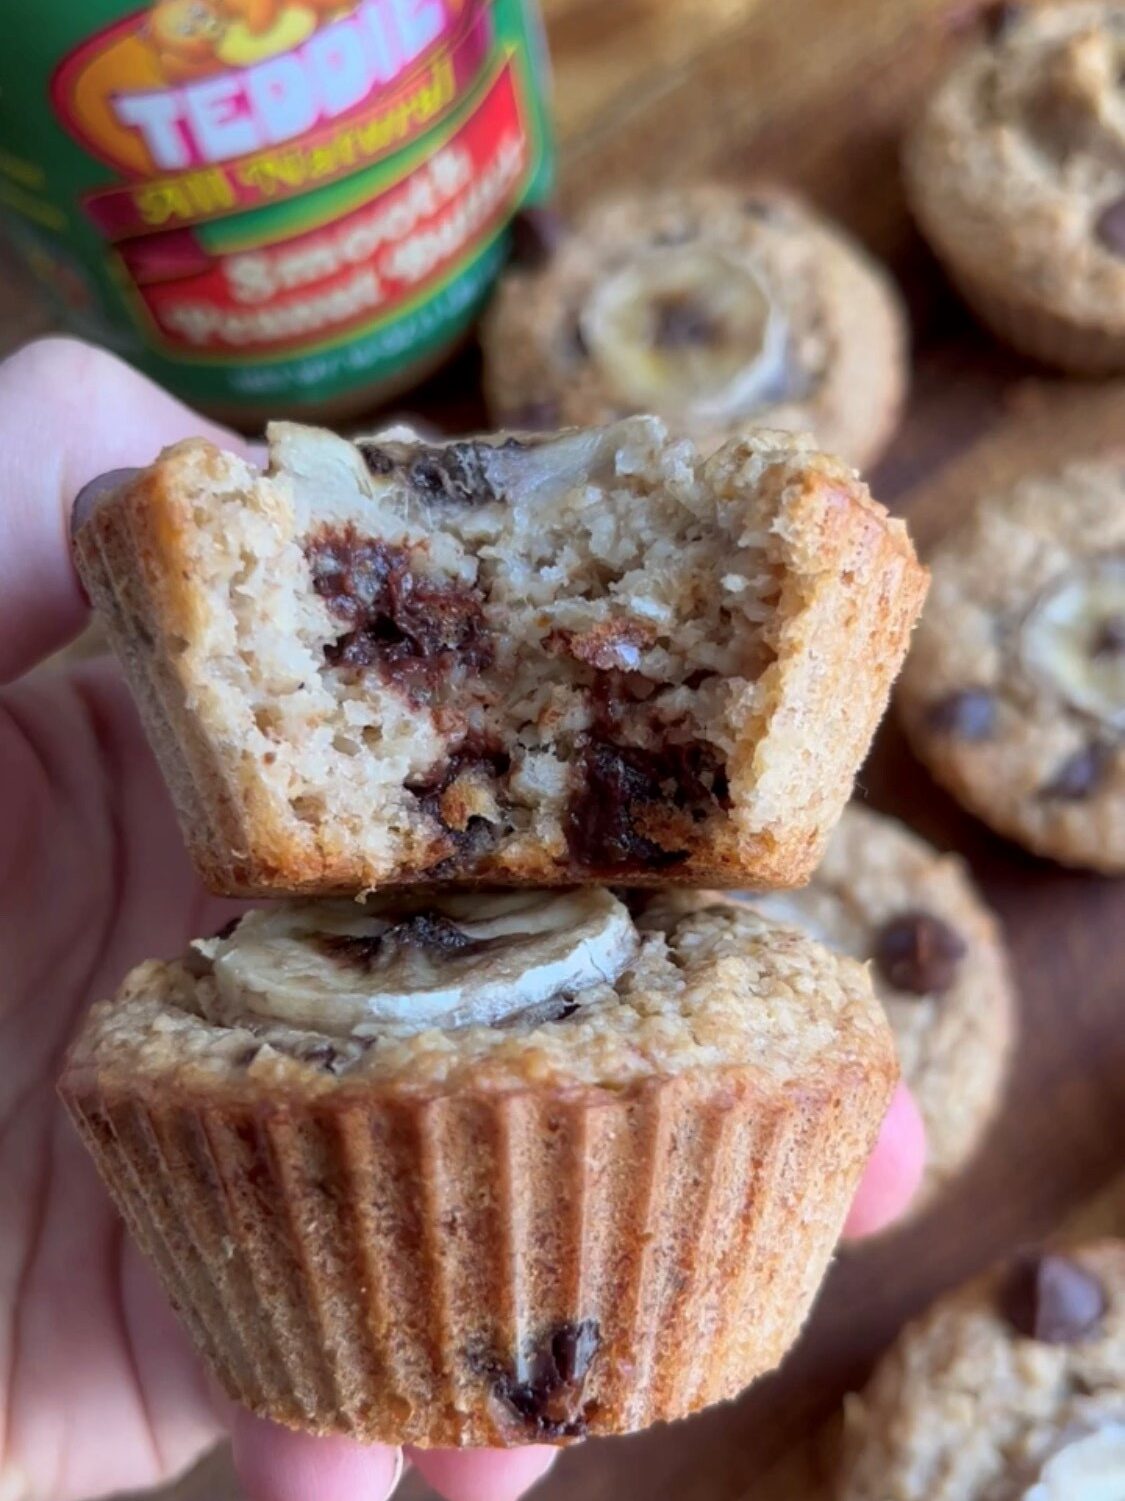 Peanut butter muffin cut in half